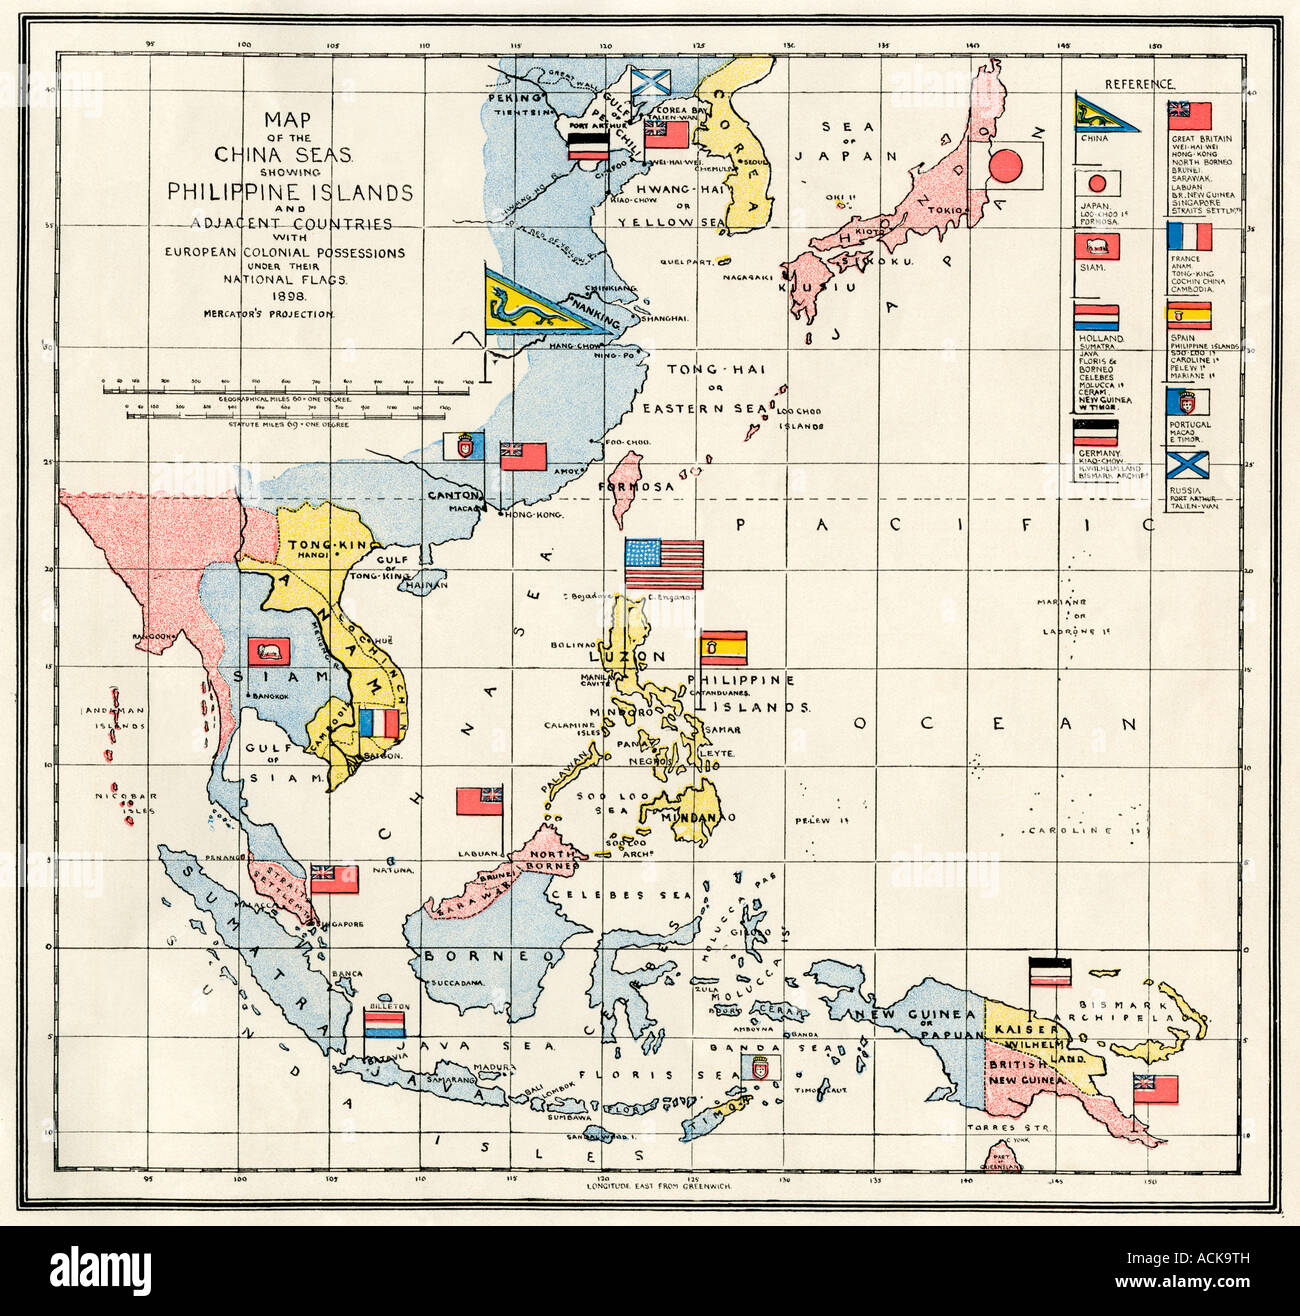 Karte von dem Chinesischen Meer, von den Philippinen und aus europäischen Kolonien in der Region Südostasien 1898. Farblithographie Stockfoto